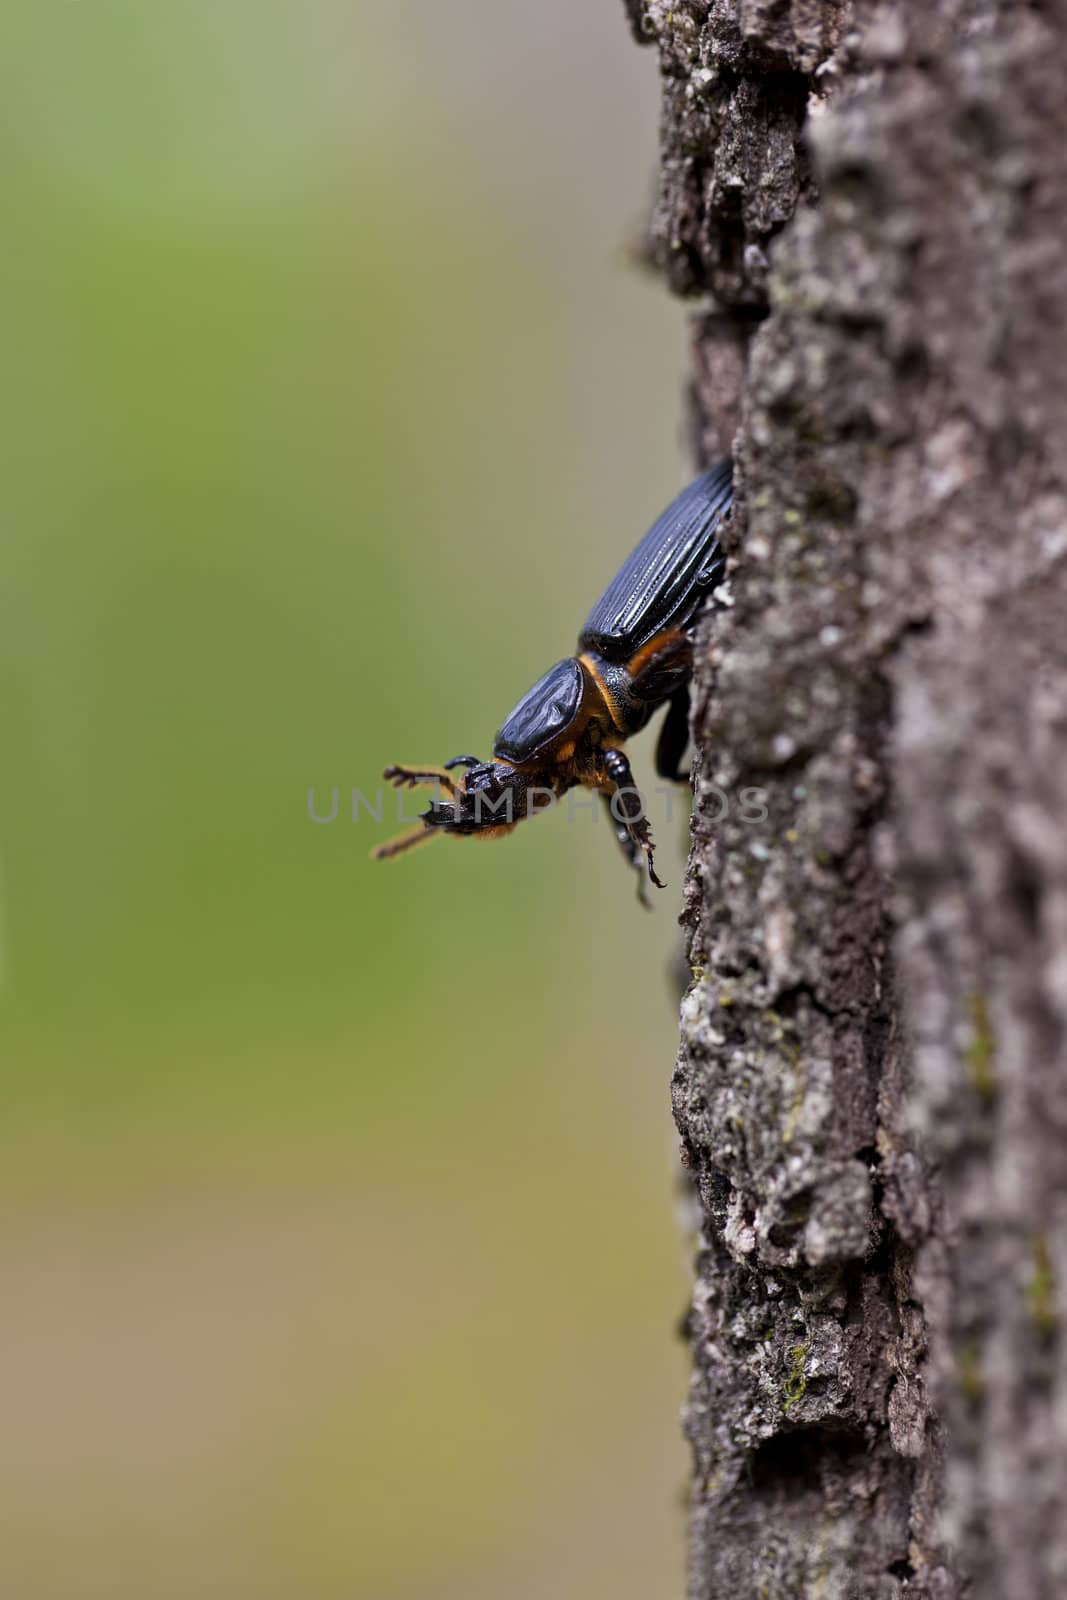 Jerusalem beetle on Tree by macropixel